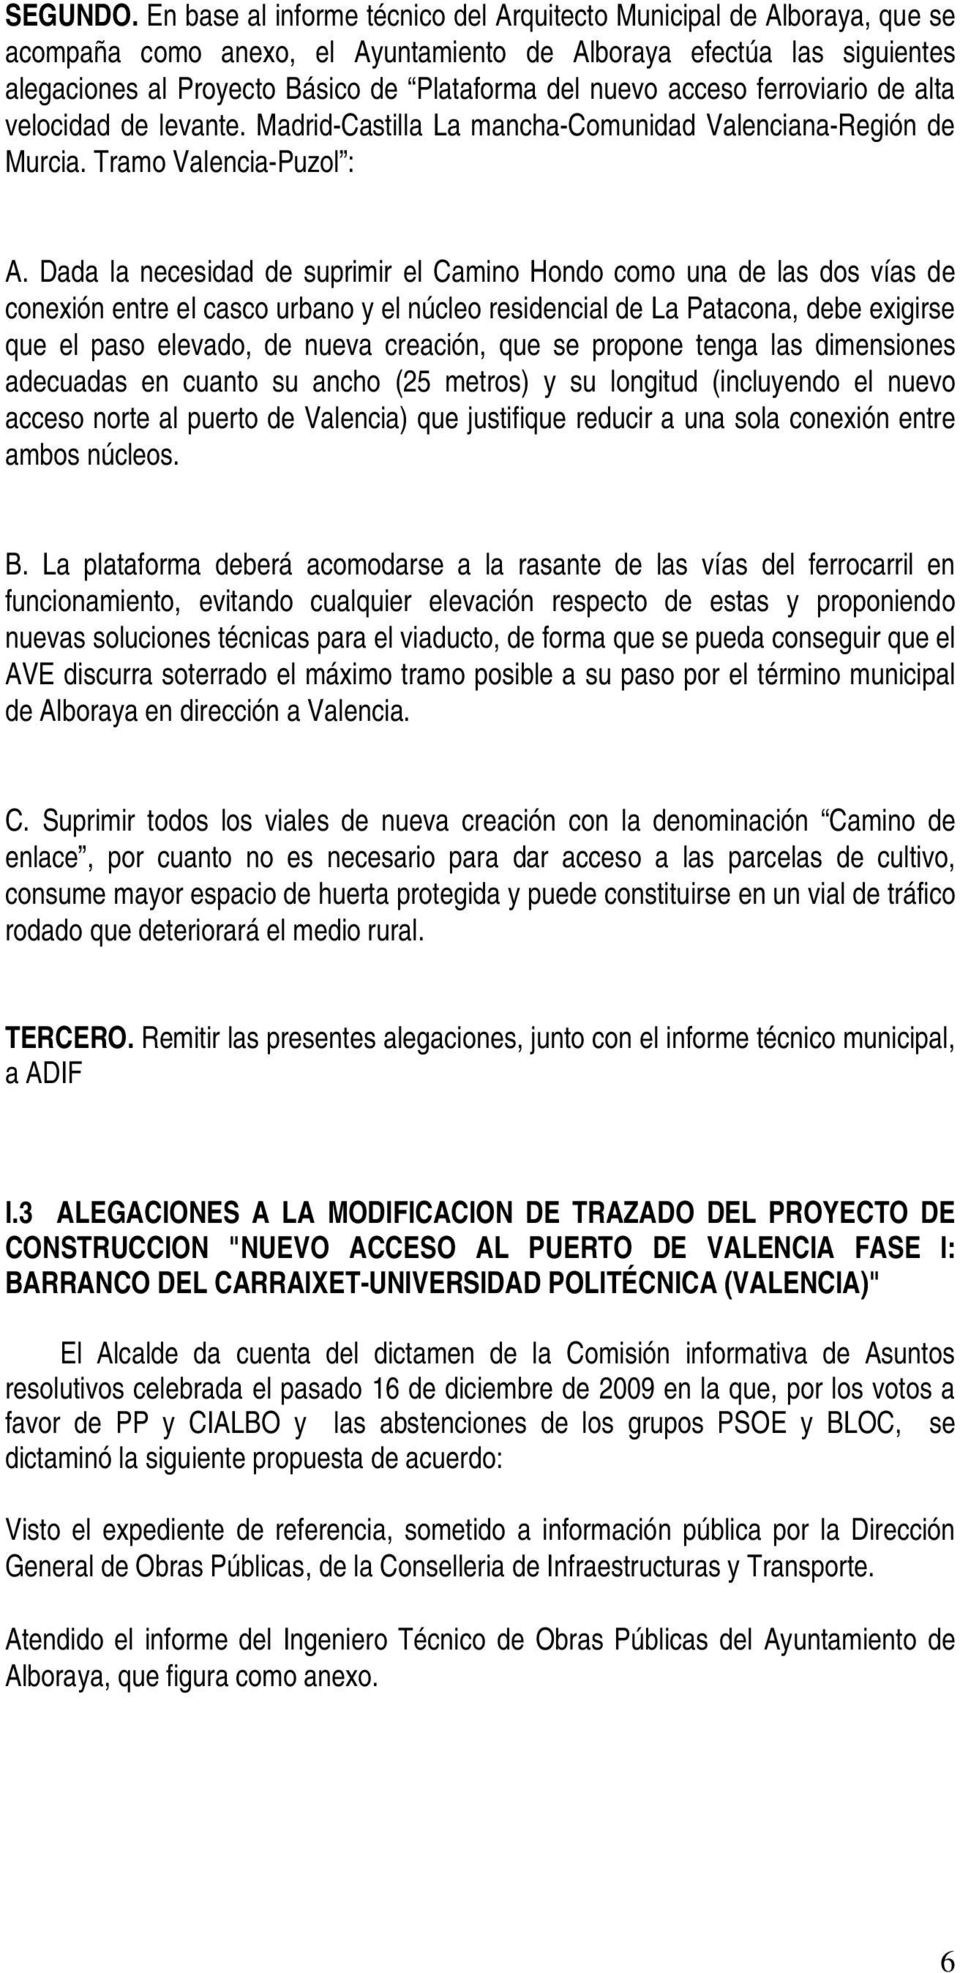 acceso ferroviario de alta velocidad de levante. Madrid-Castilla La mancha-comunidad Valenciana-Región de Murcia. Tramo Valencia-Puzol : A.